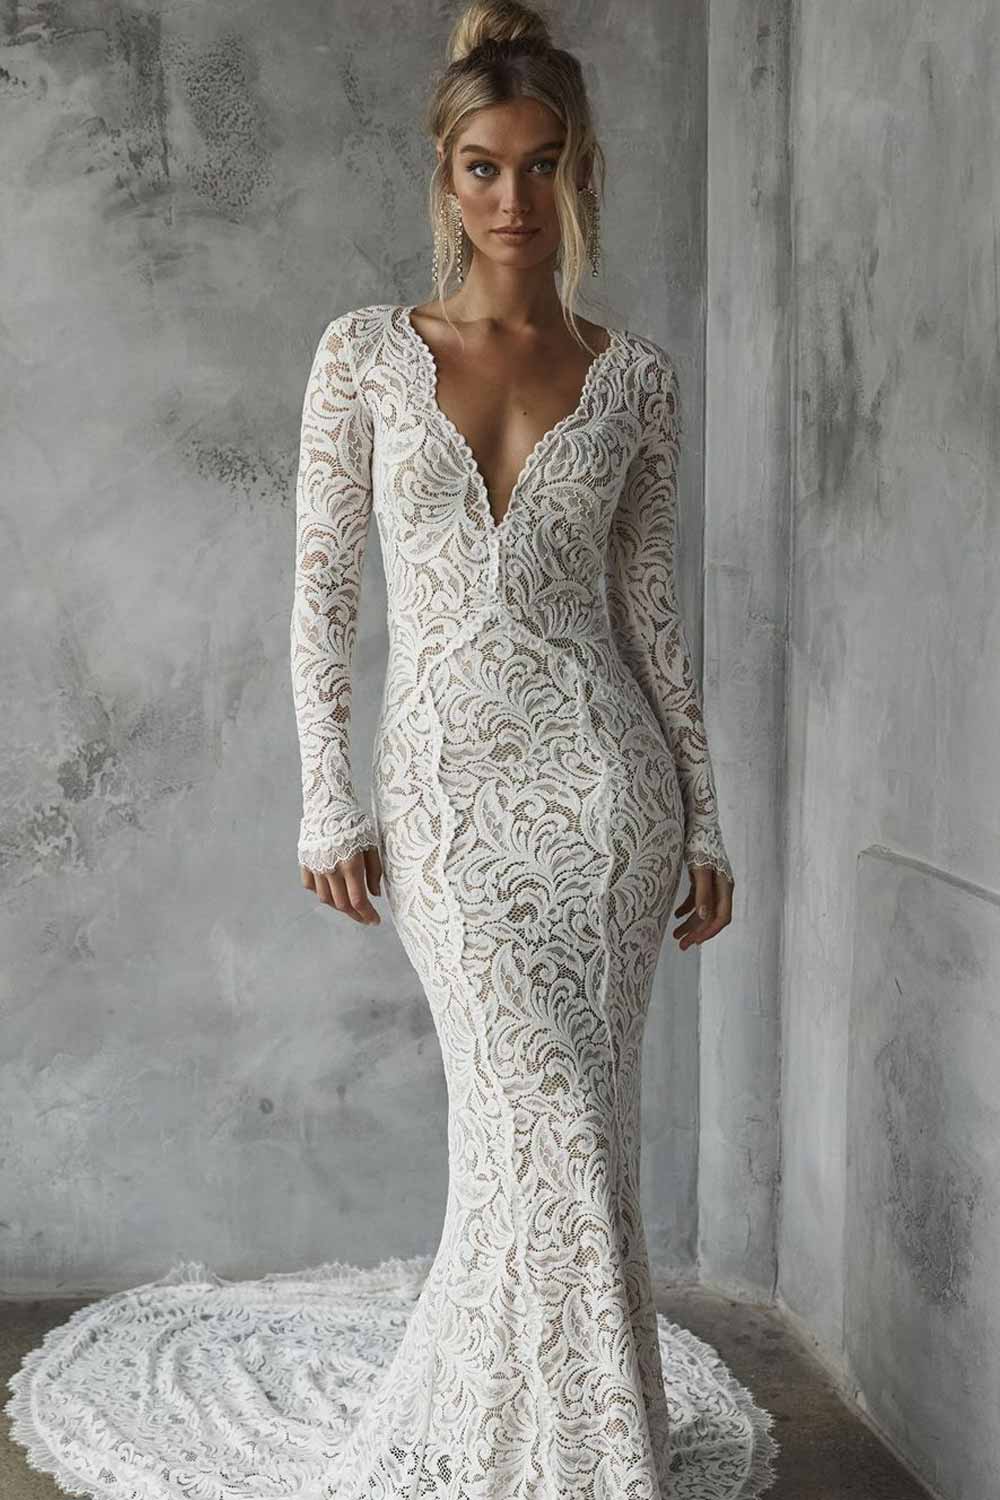 Mermaid Wedding Dress Design with Long Sleeves